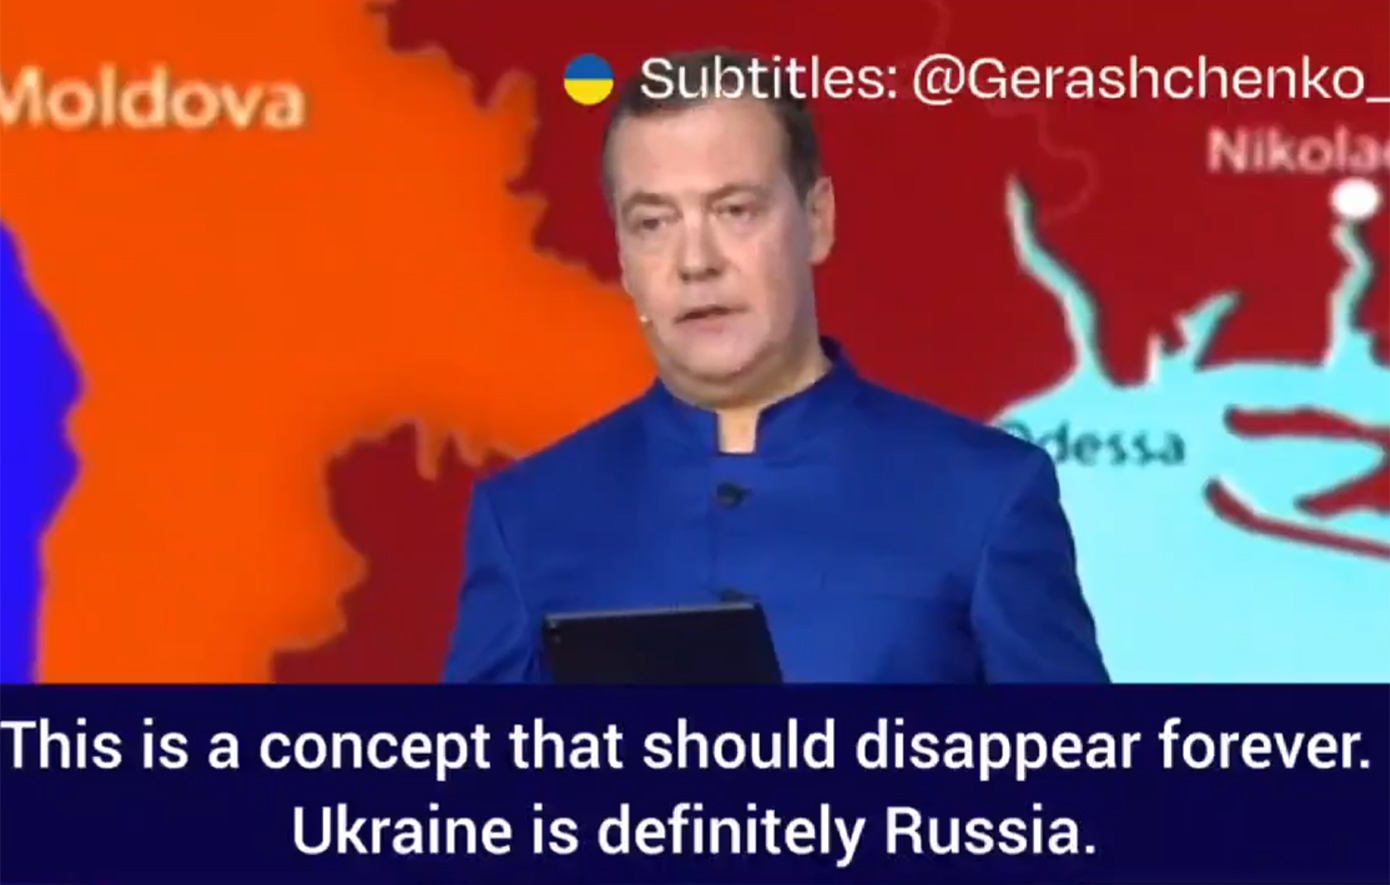 Ο Ντμίτρι Μεντβέντεφ λέει ότι η Ουκρανία ανήκει στη Ρωσία